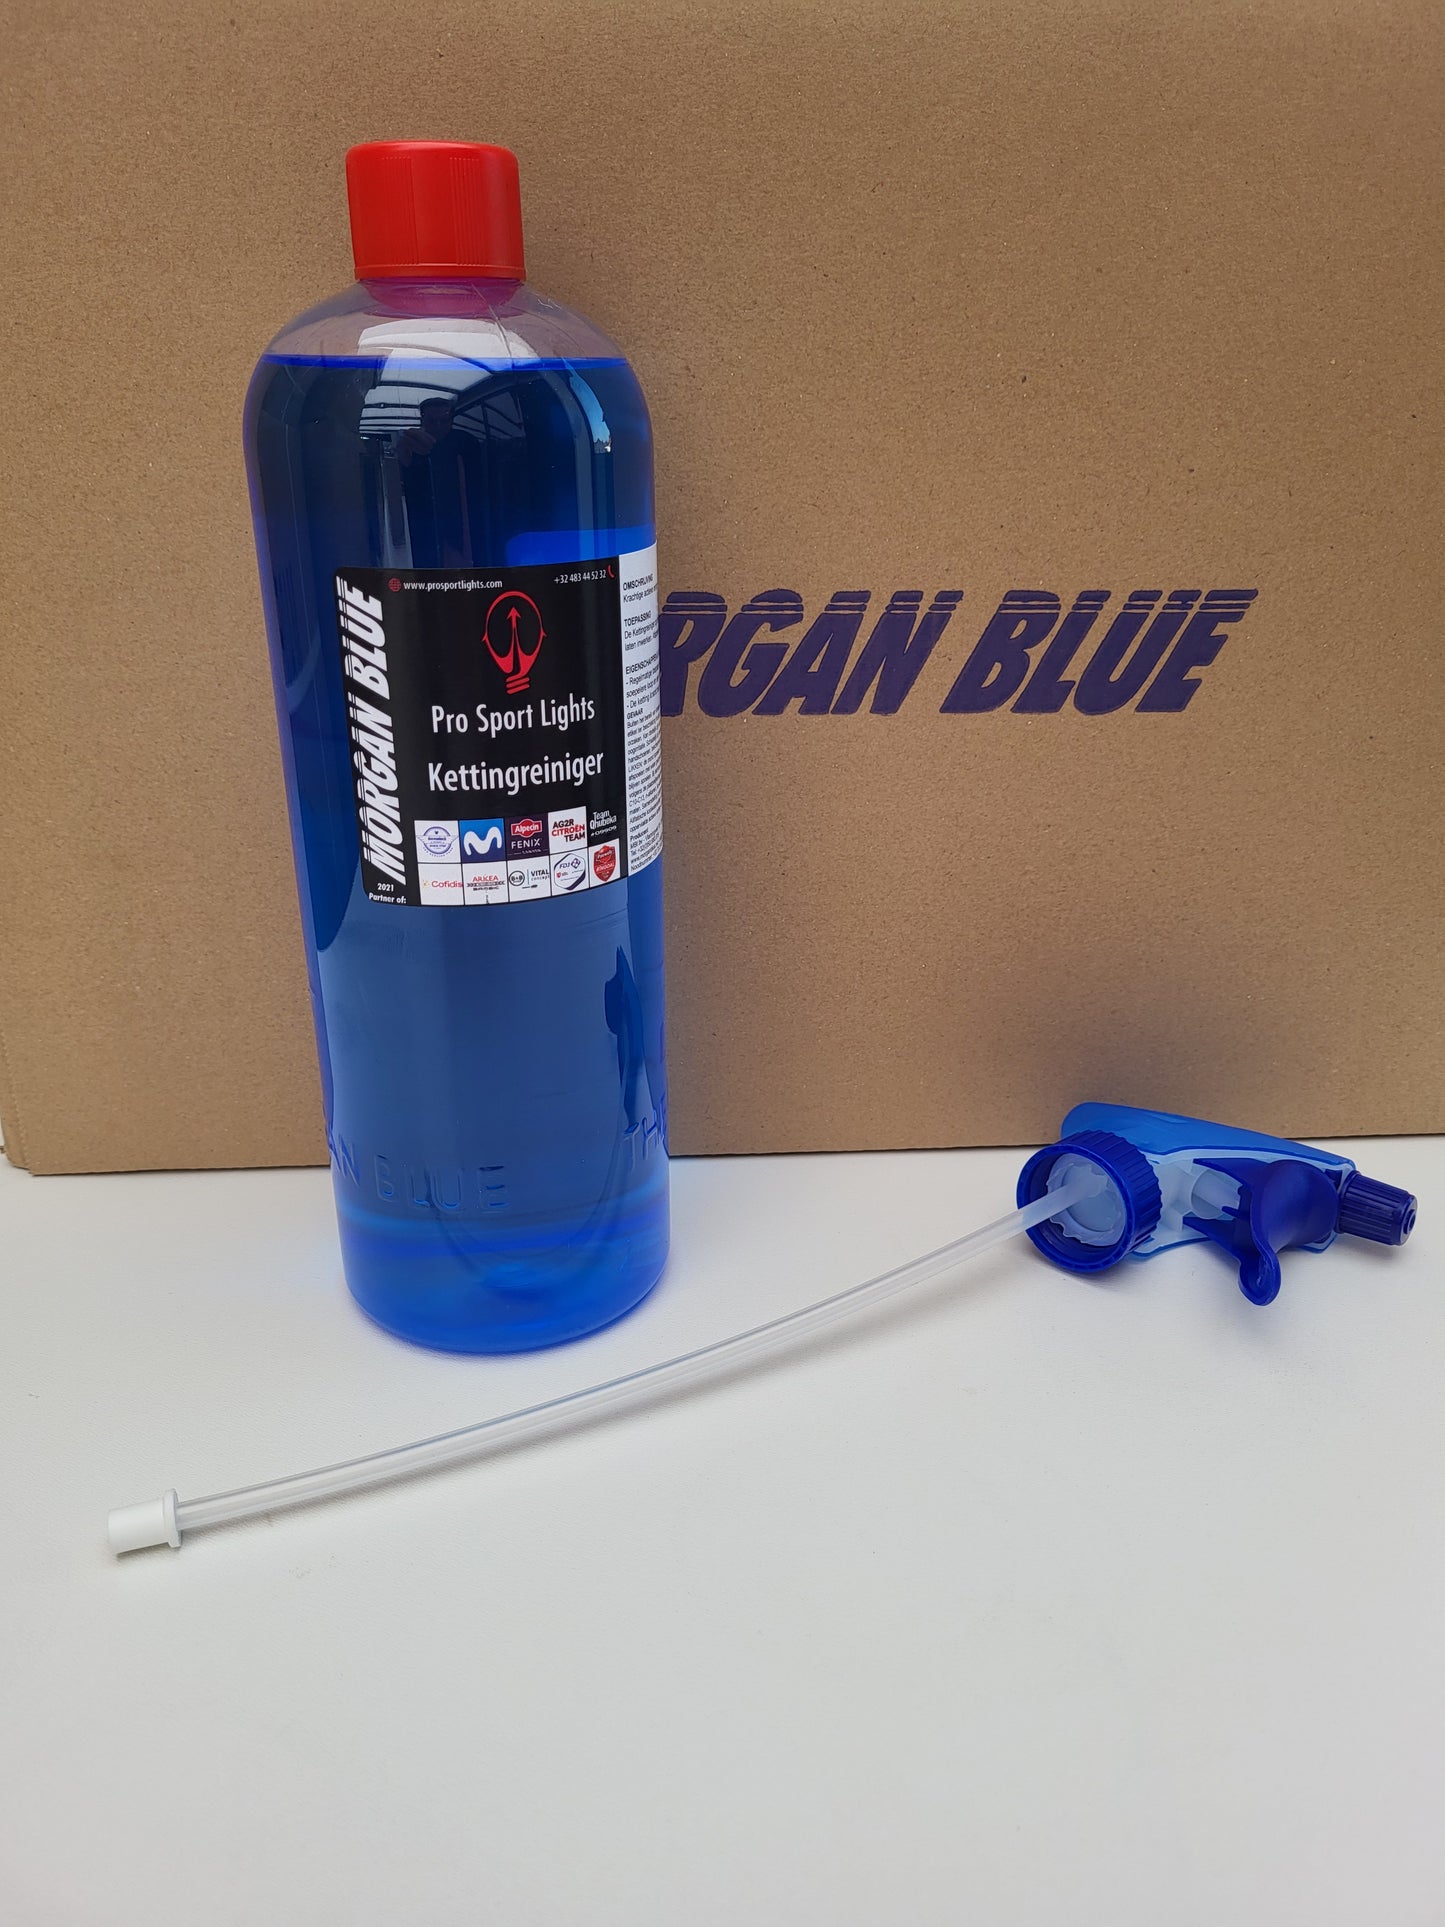 Morgan Blue Chain Cleaner 1 Litre - Dégraissant 